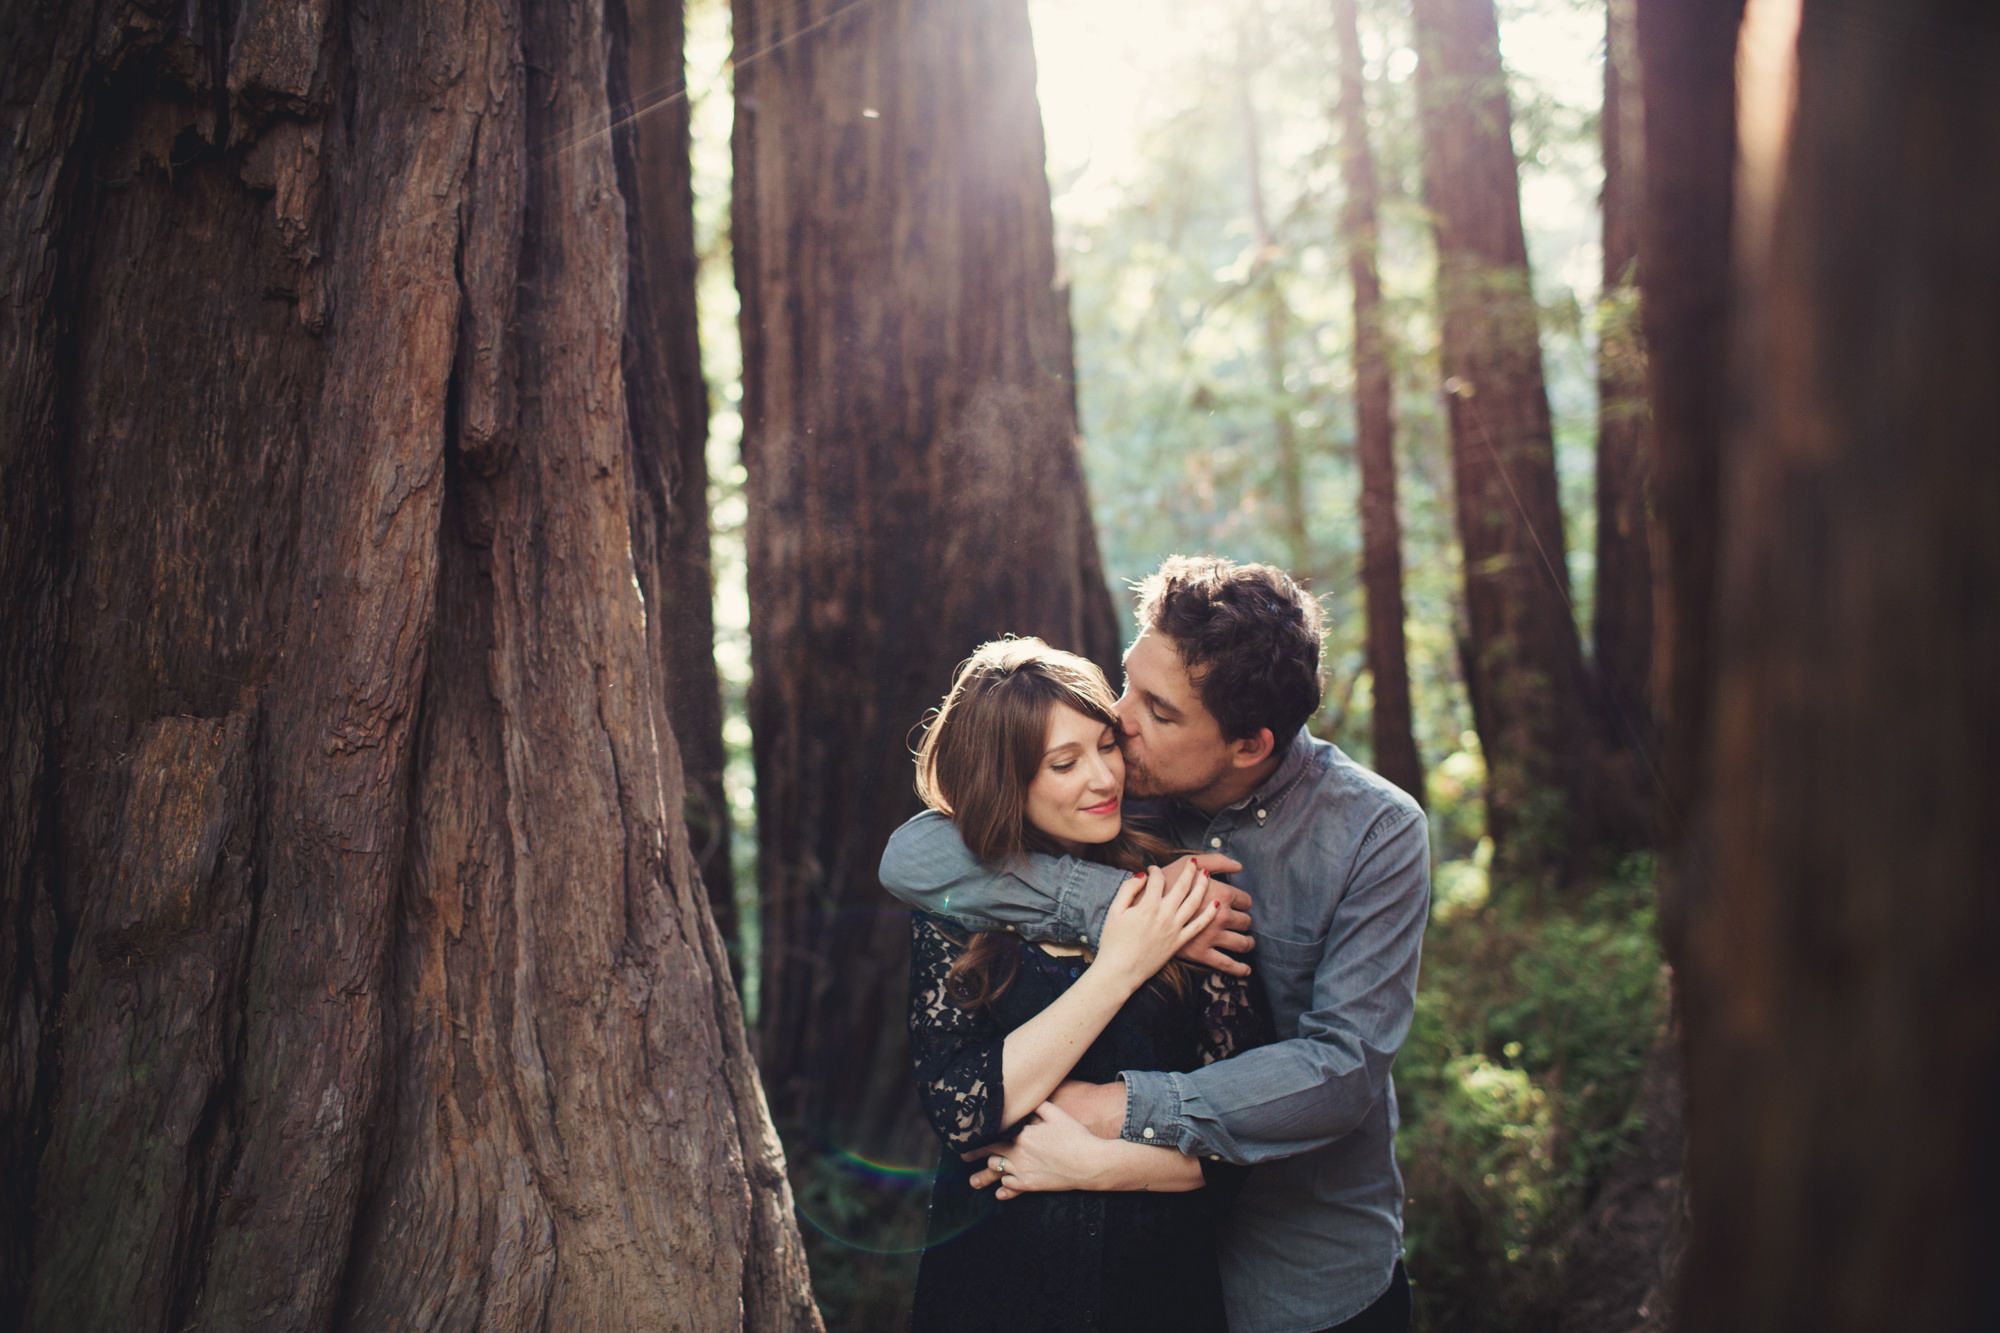 Couple Photo Ideas for Love Story, Engagement, Wedding Photohoot